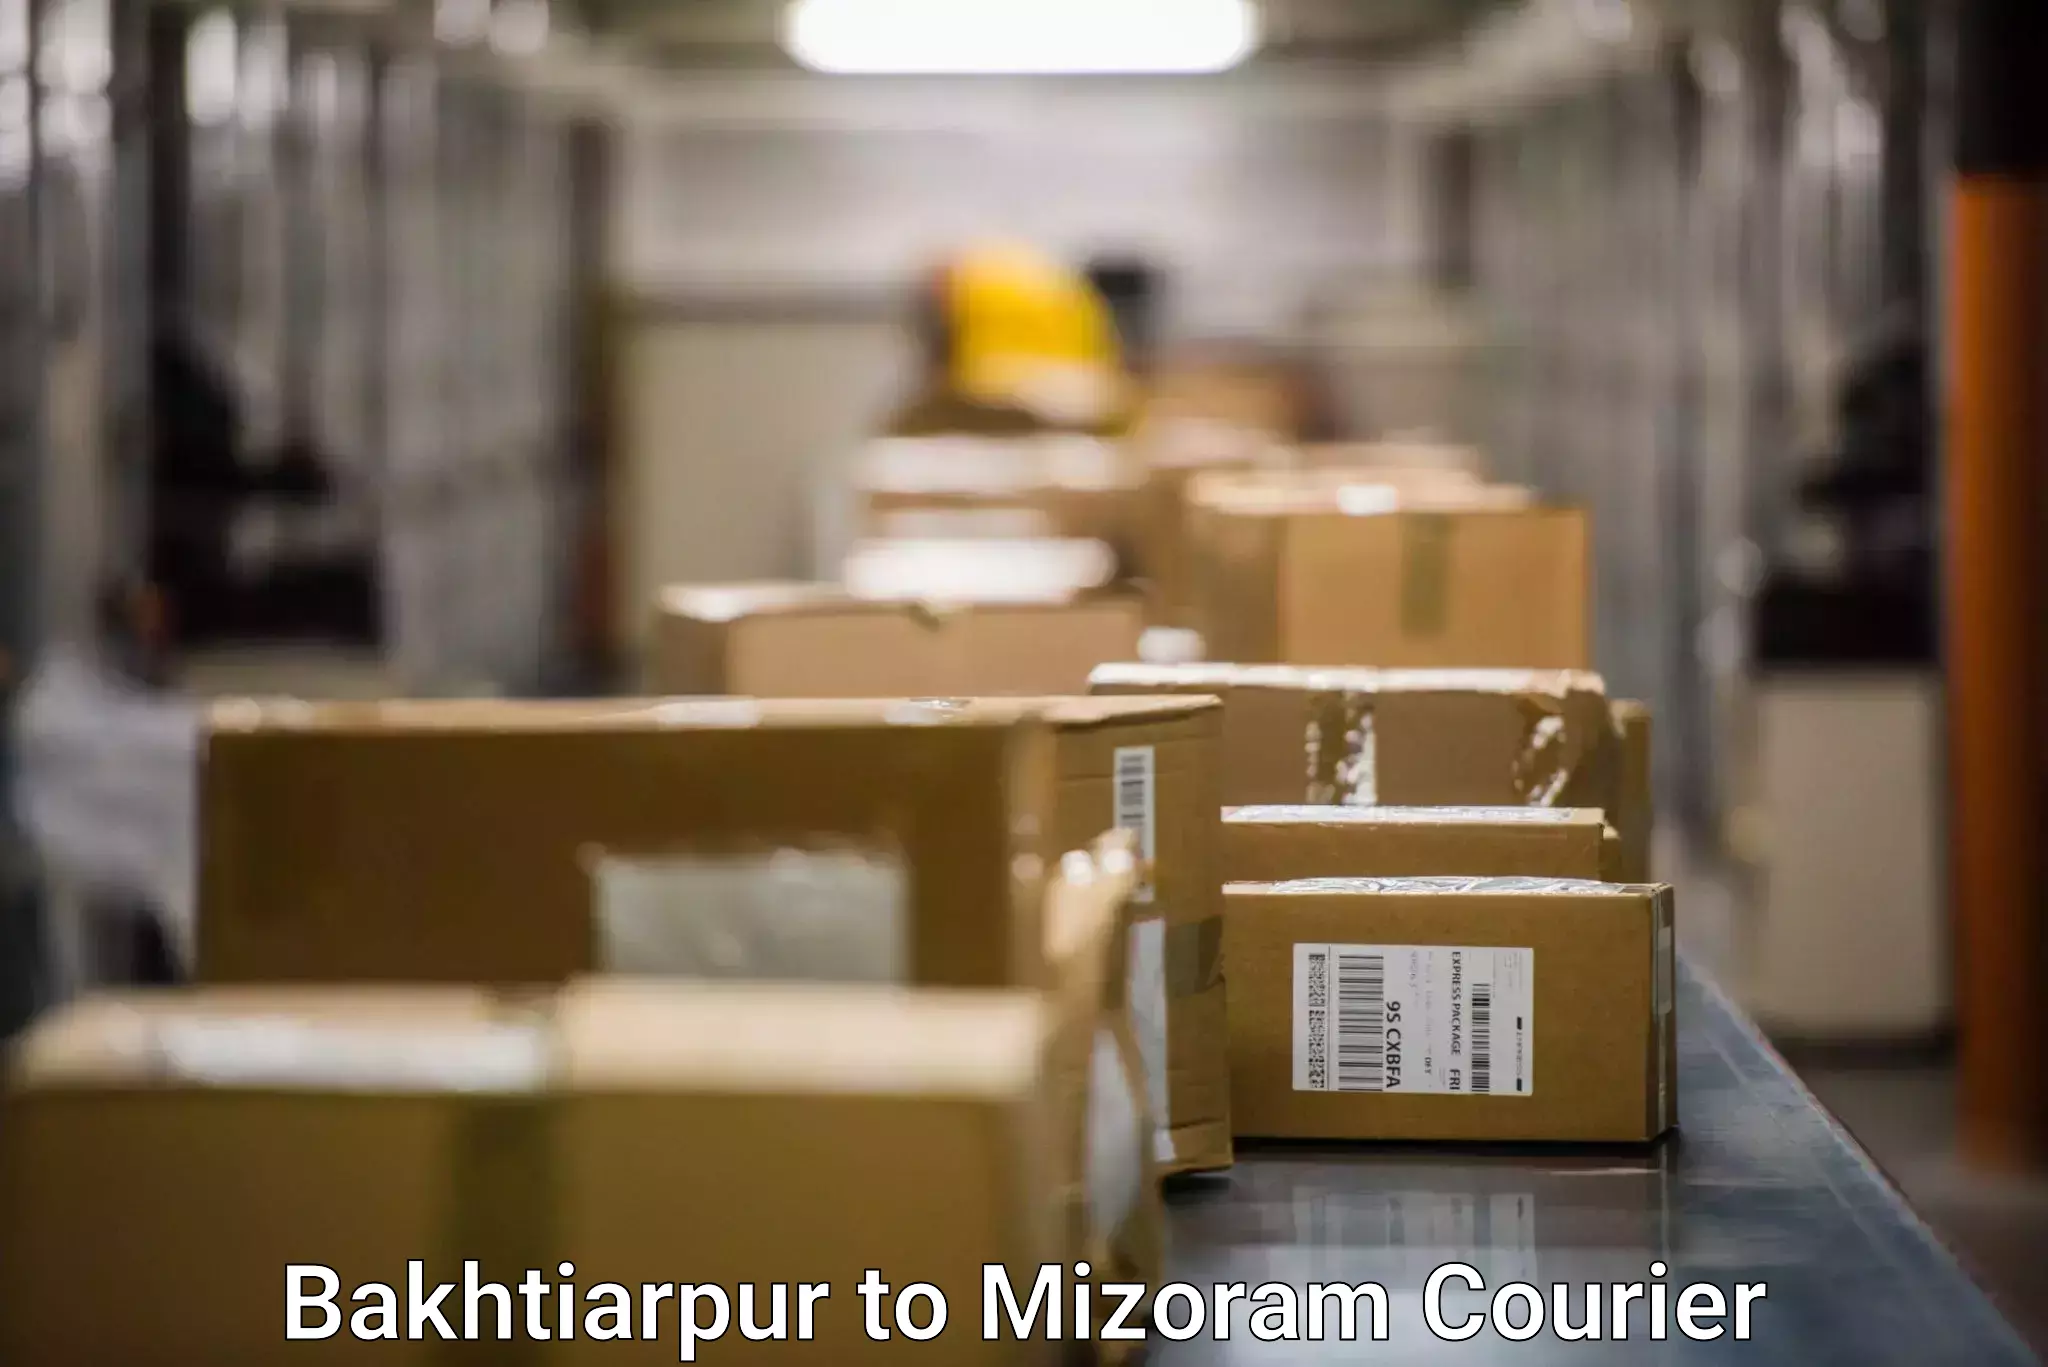 Efficient parcel transport Bakhtiarpur to Hnahthial